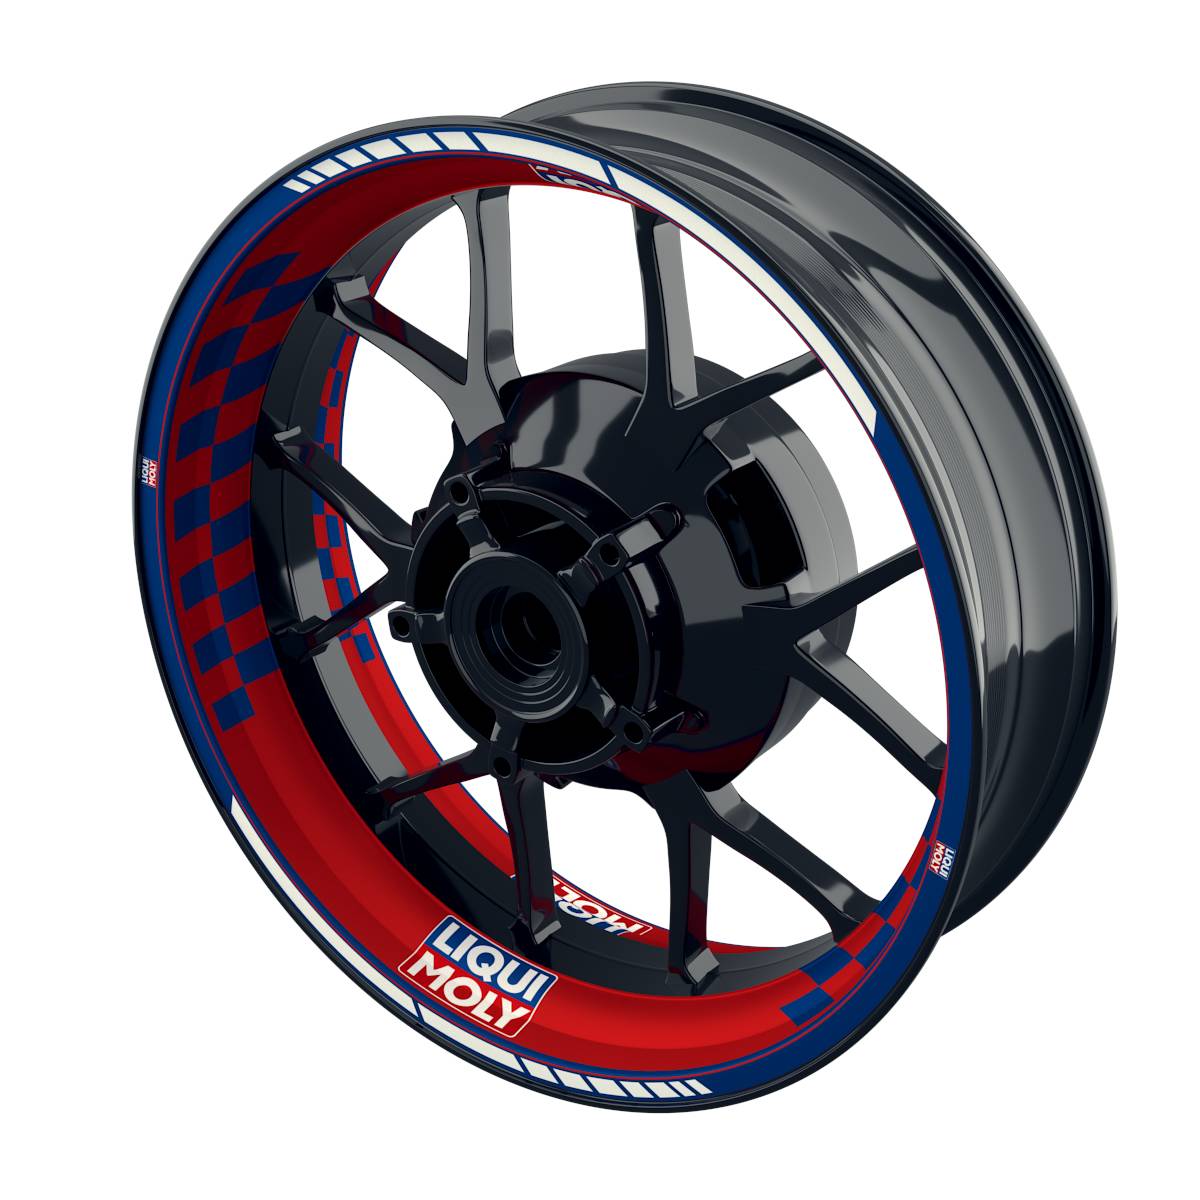 Liqui Moly Rim Decals Motiv V4 Wheelsticker Premium